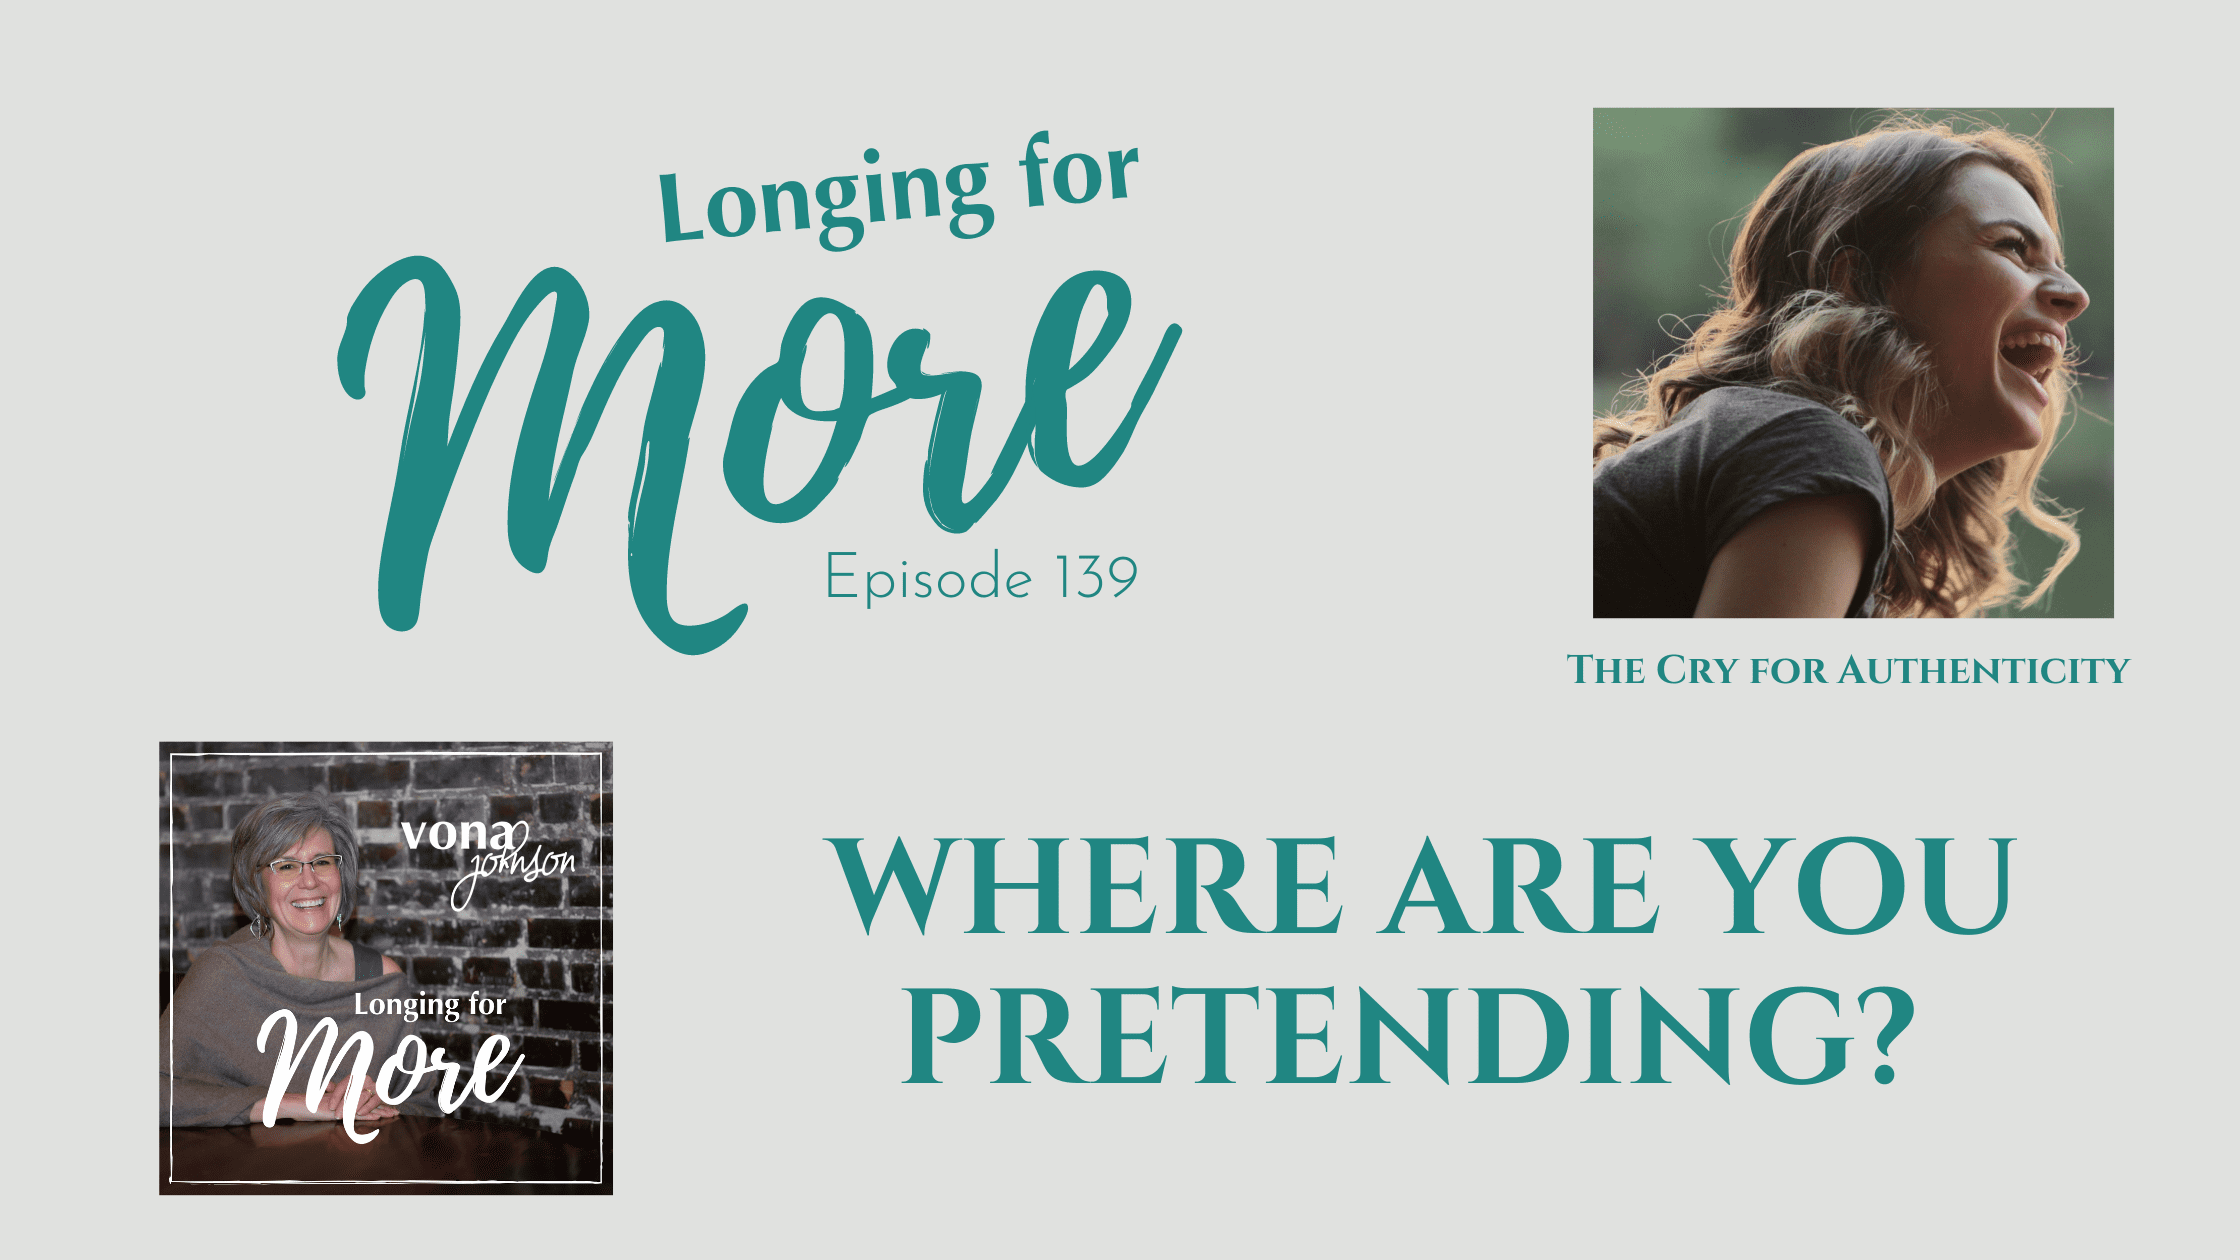 Where are you pretending?